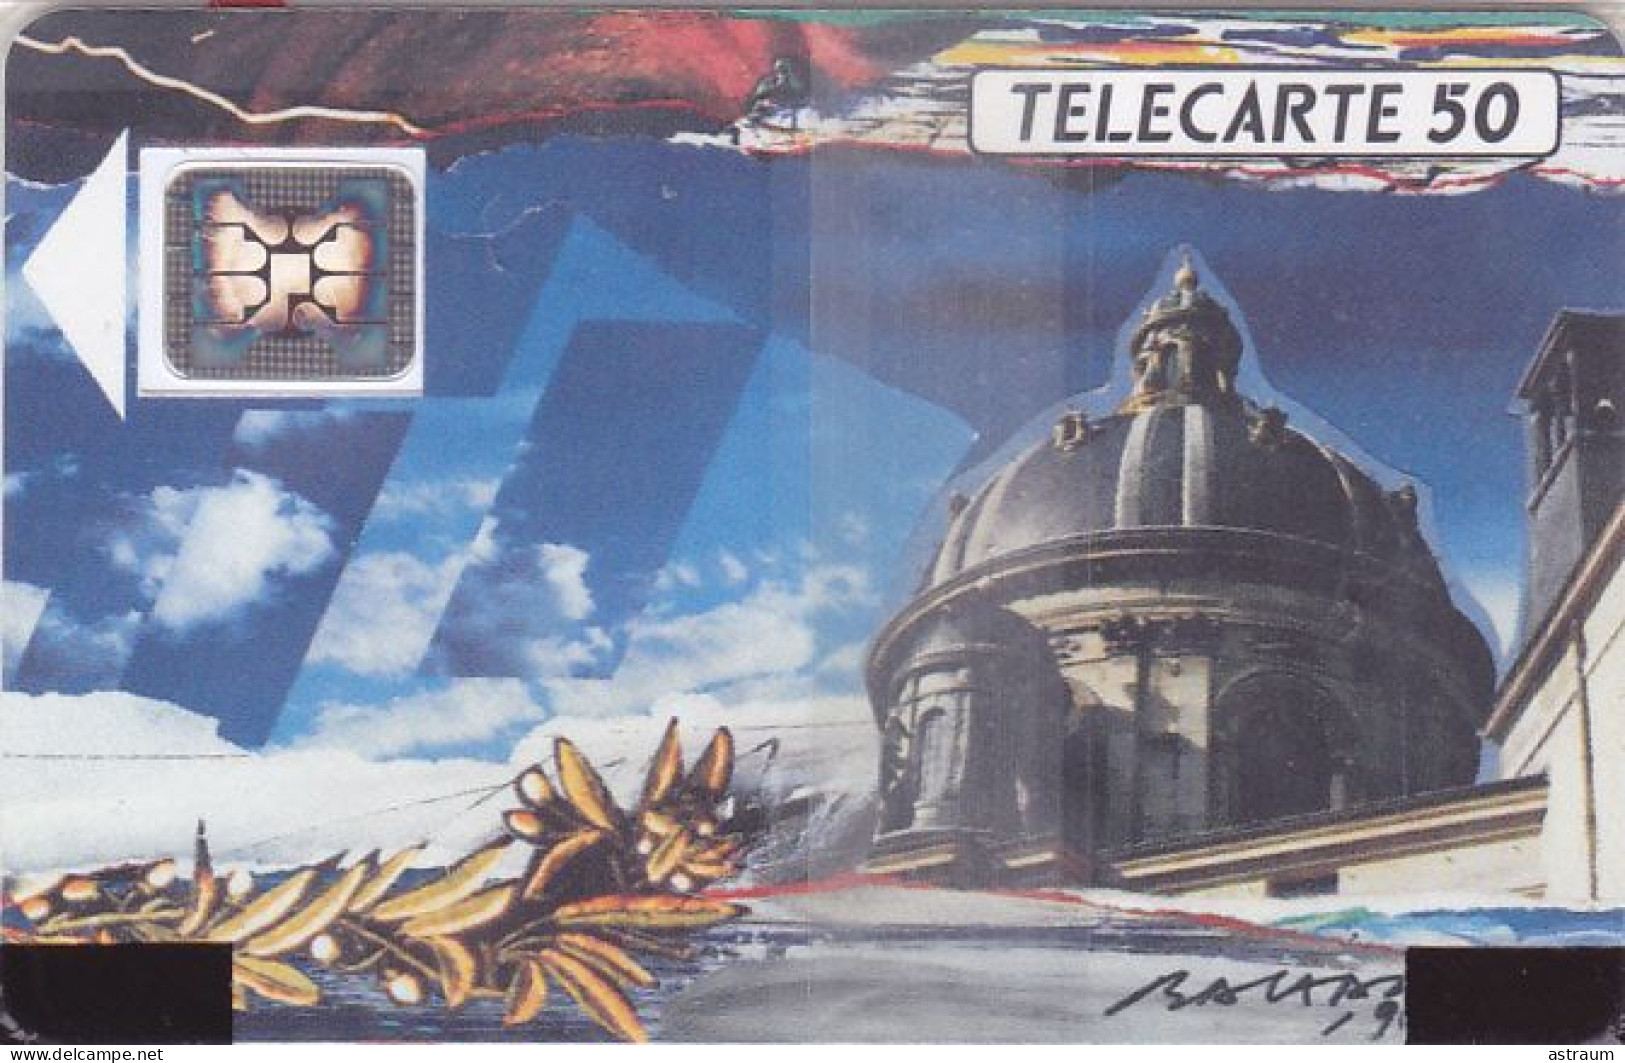 Telecarte Publique F115A NSB - Coupole Academie - 50 U - Sc4an - 1989 - 1989